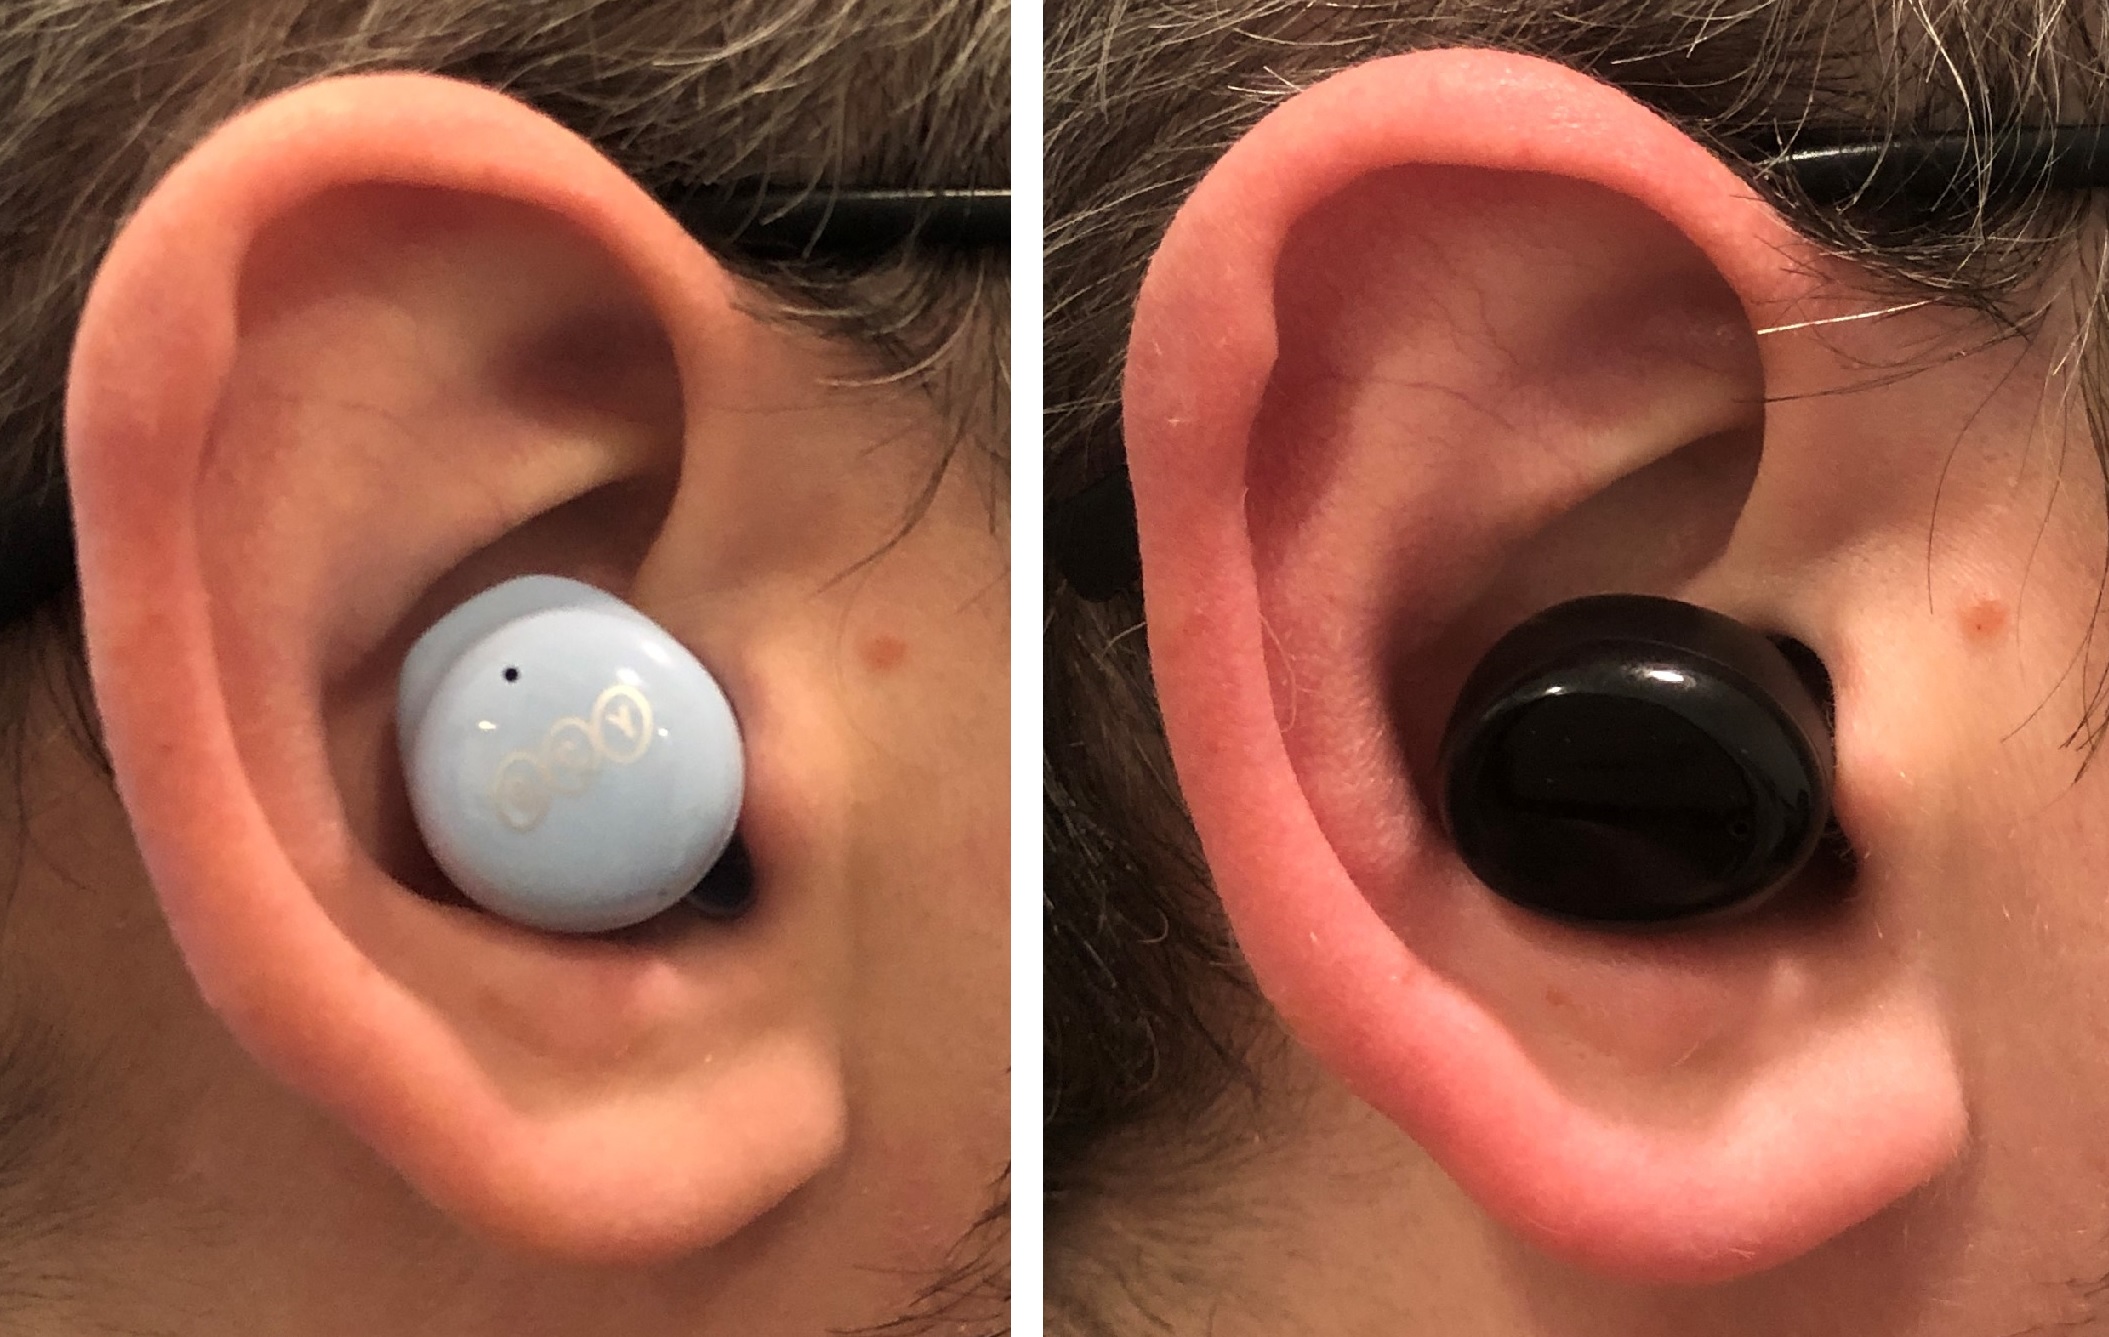 QCY T17 vs TOZO T6 earbud in ear fit